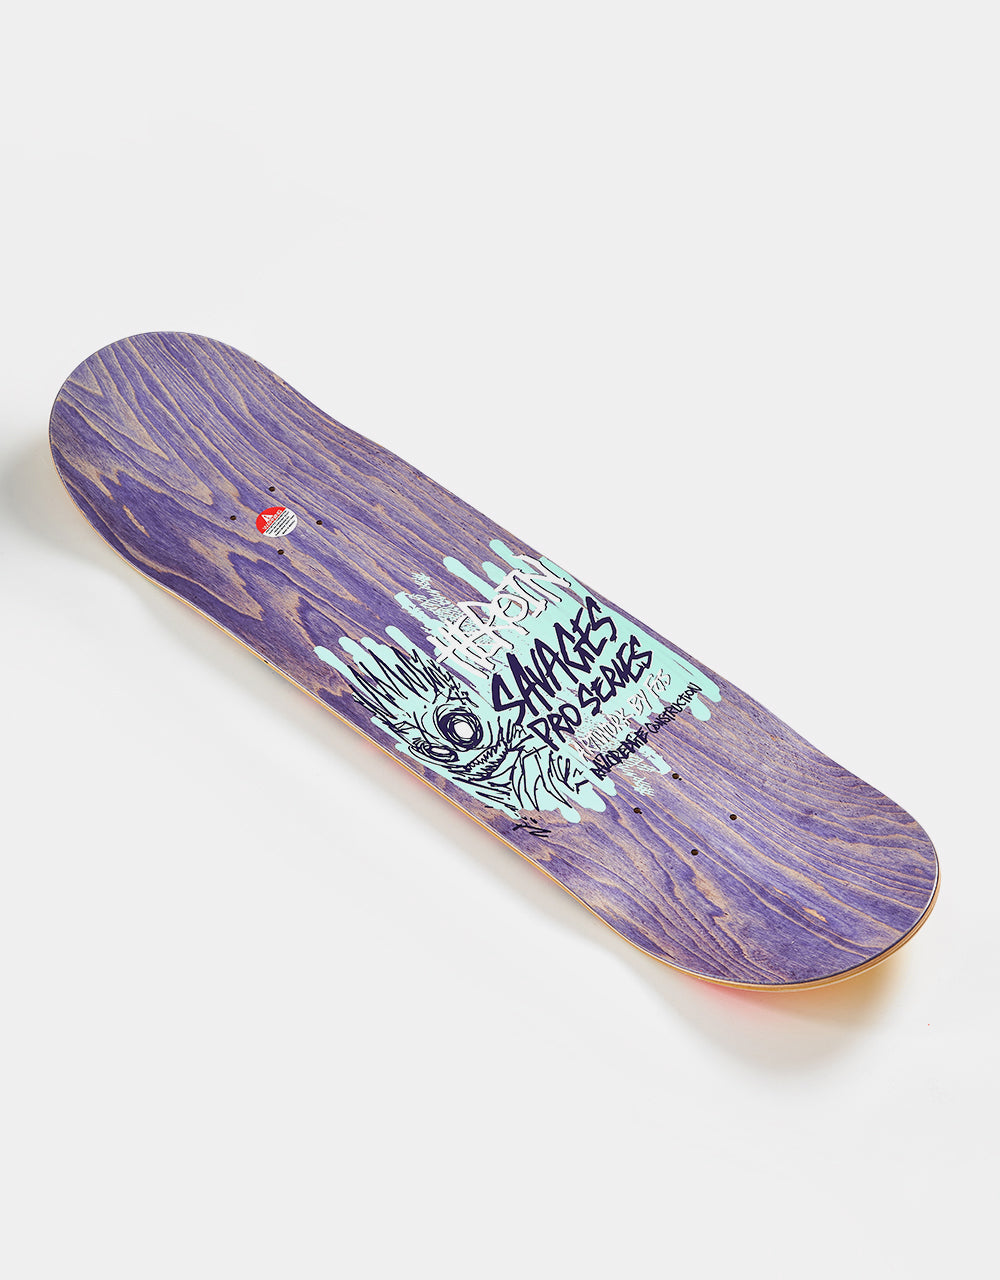 Heroin Wilson Savages Skateboard Deck - 8.5”